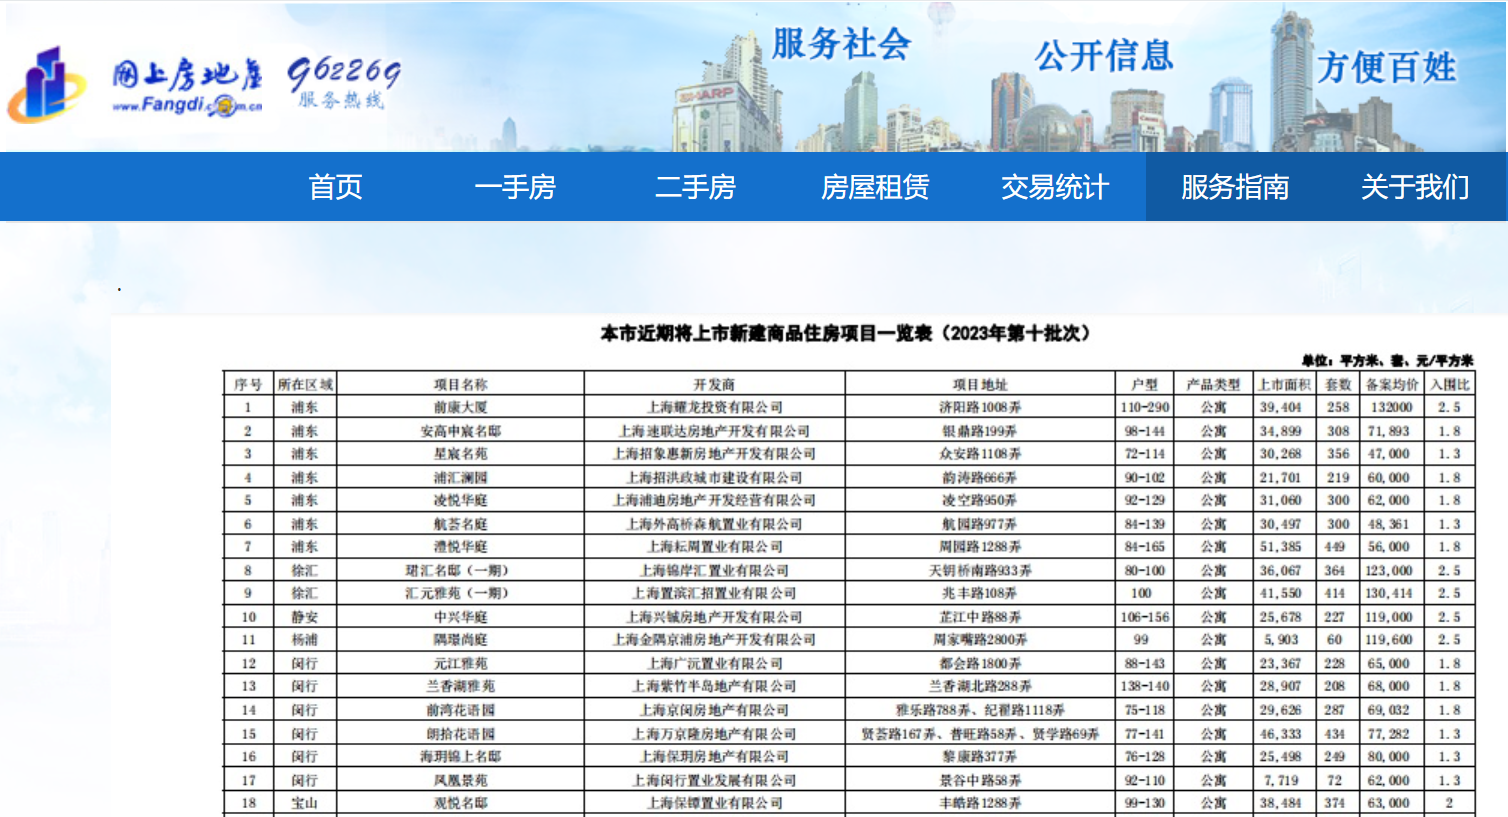 上海9240套新房集中入市，单价10万元+网红盘扎堆……